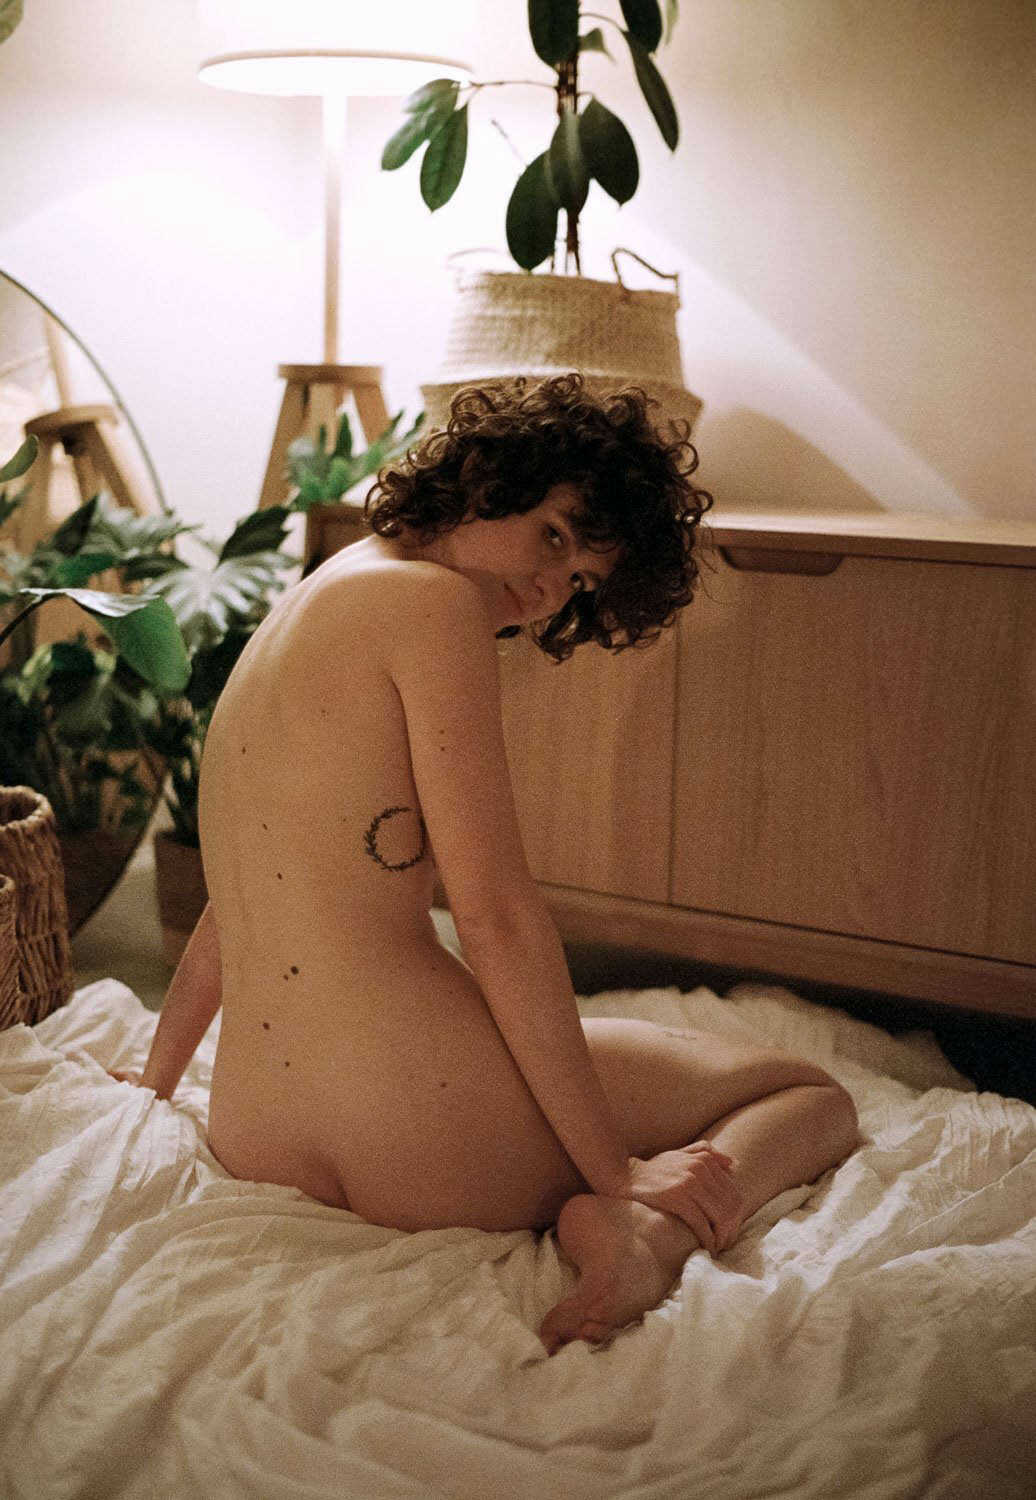 Γυμνές σέξι φωτογραφίες του μοντέλου Malgorzata 